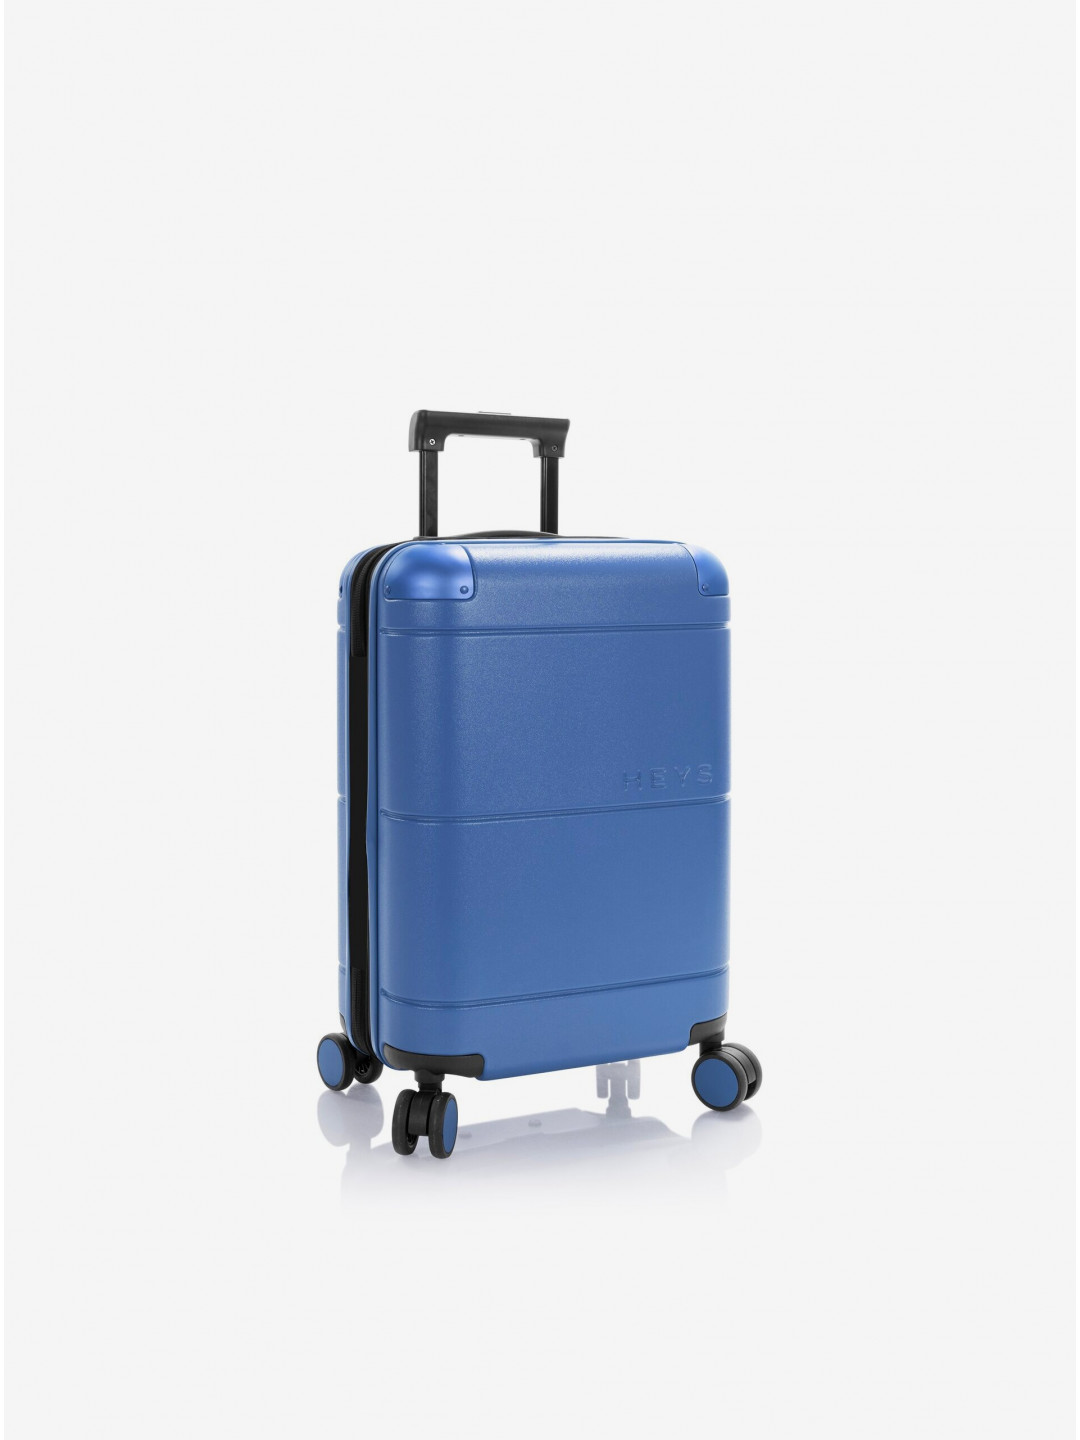 Modrý cestovní palubní kufr Heys Zen S Royal Blue